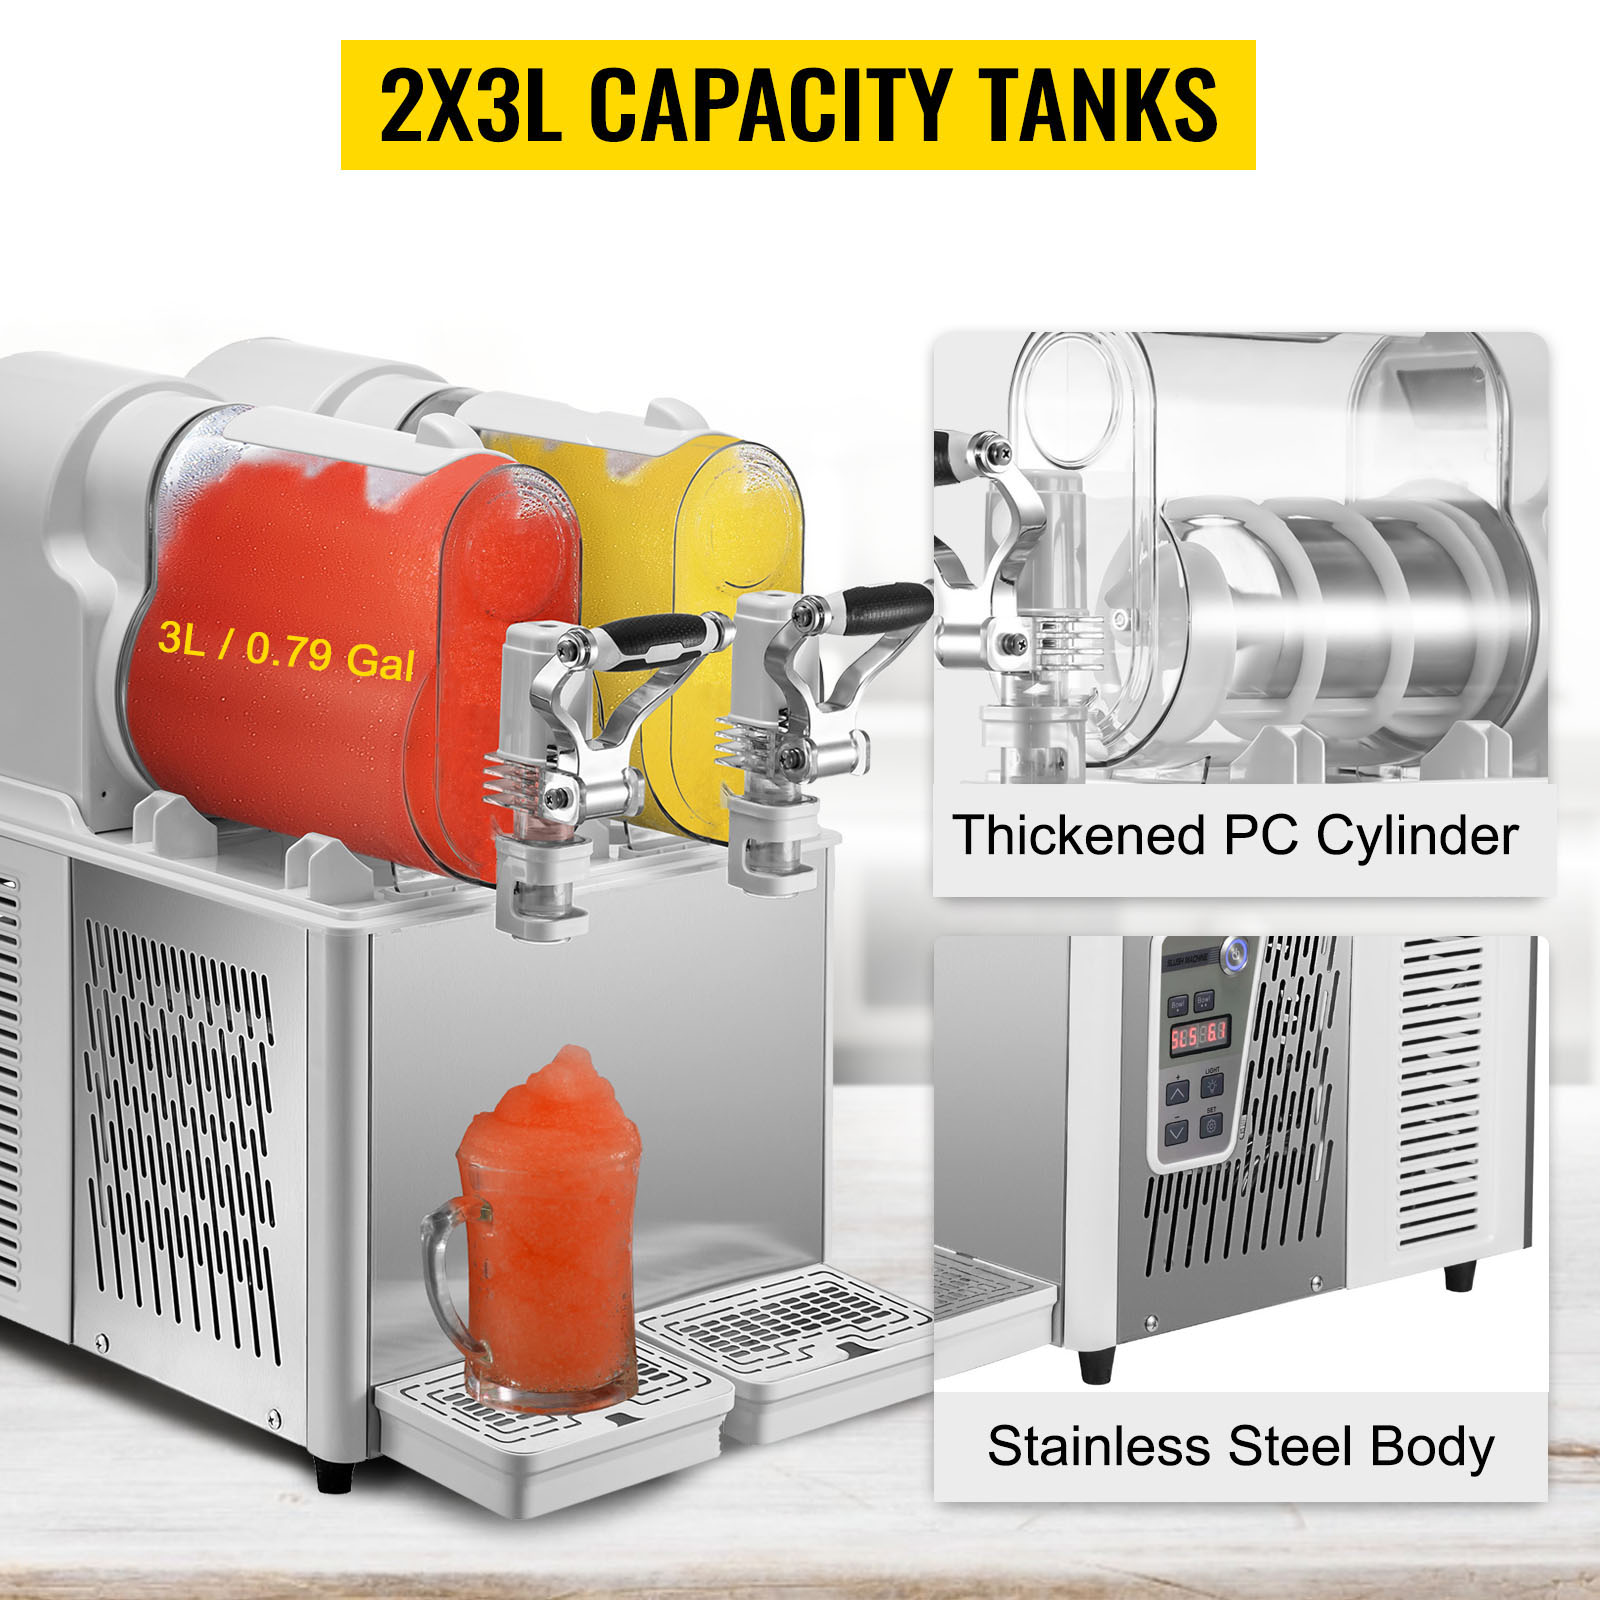 VEVOR Commercial Slushy Machine, 3LX2 Tank Slush Drink Maker, 340W